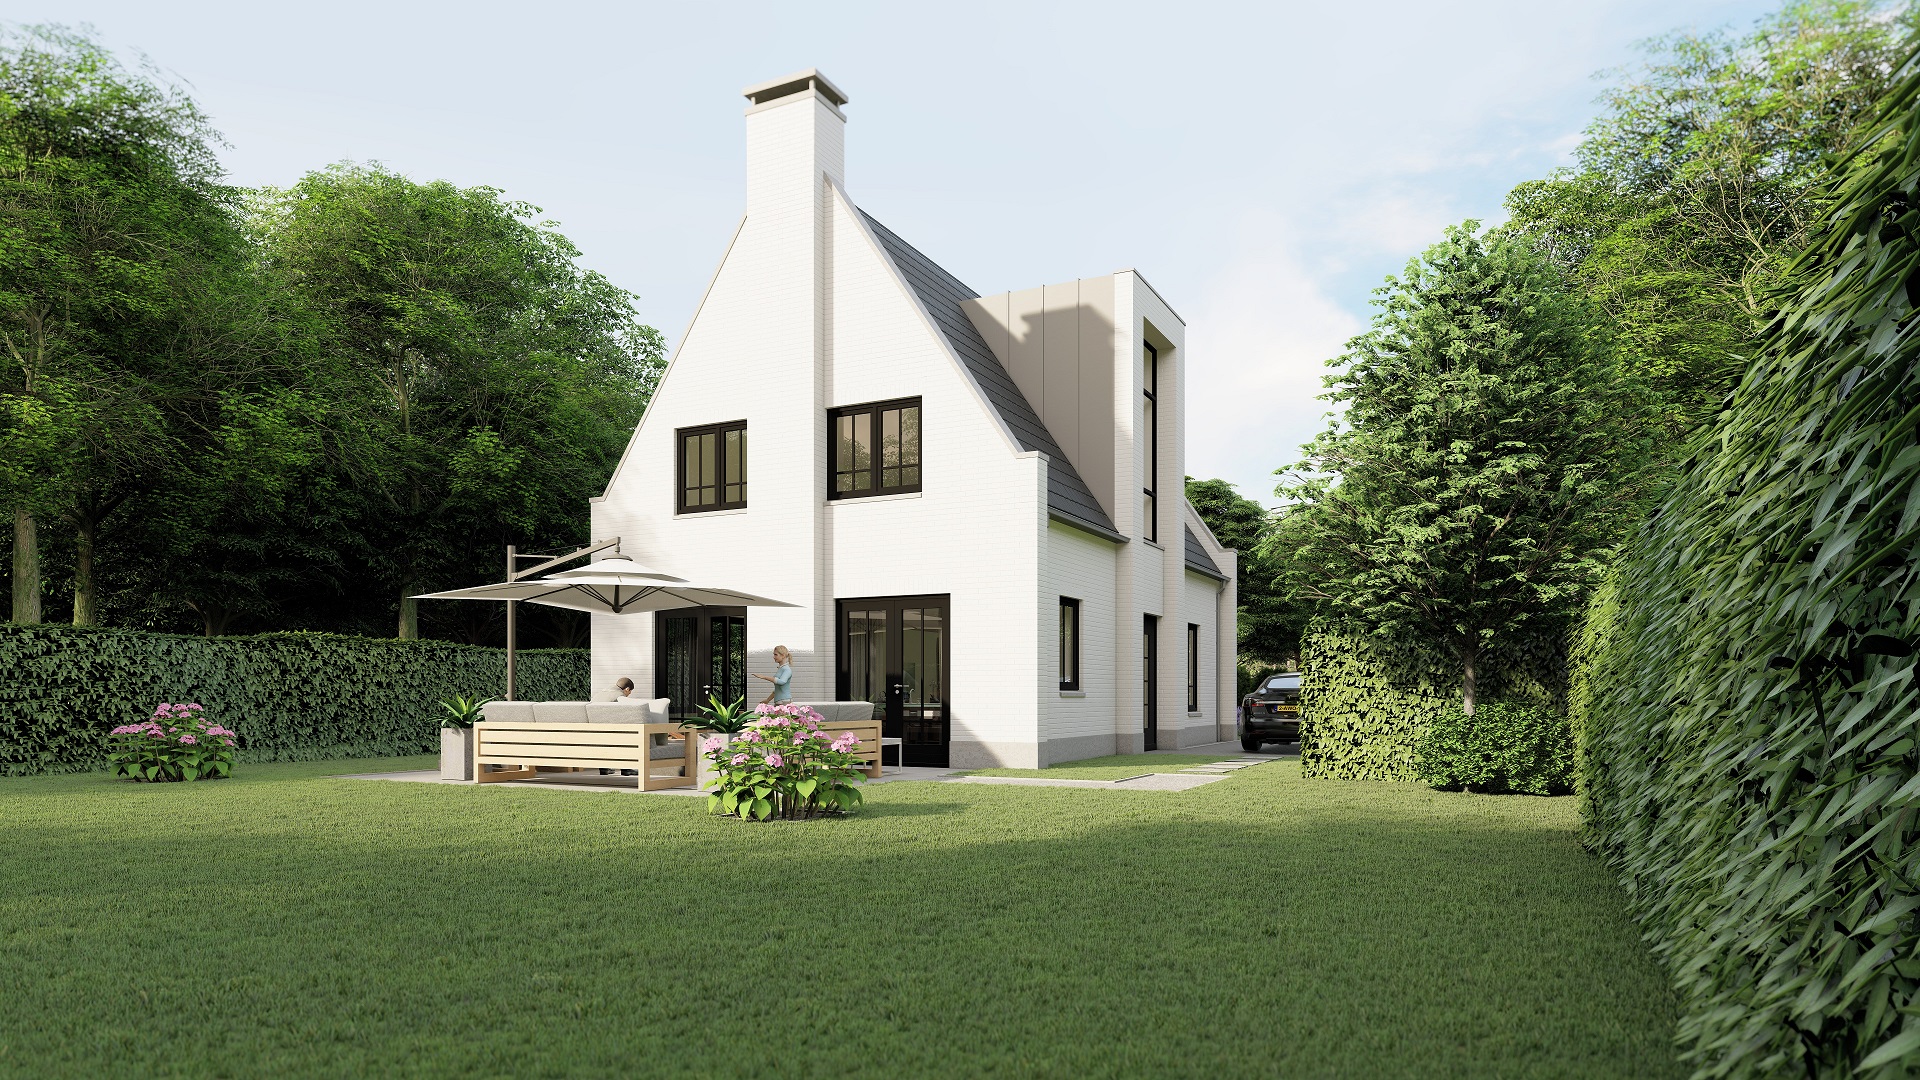 Foto: Huis bouwen  ndash  villatype Tandvlinder plattegrond begane grond   Architectuurwonen